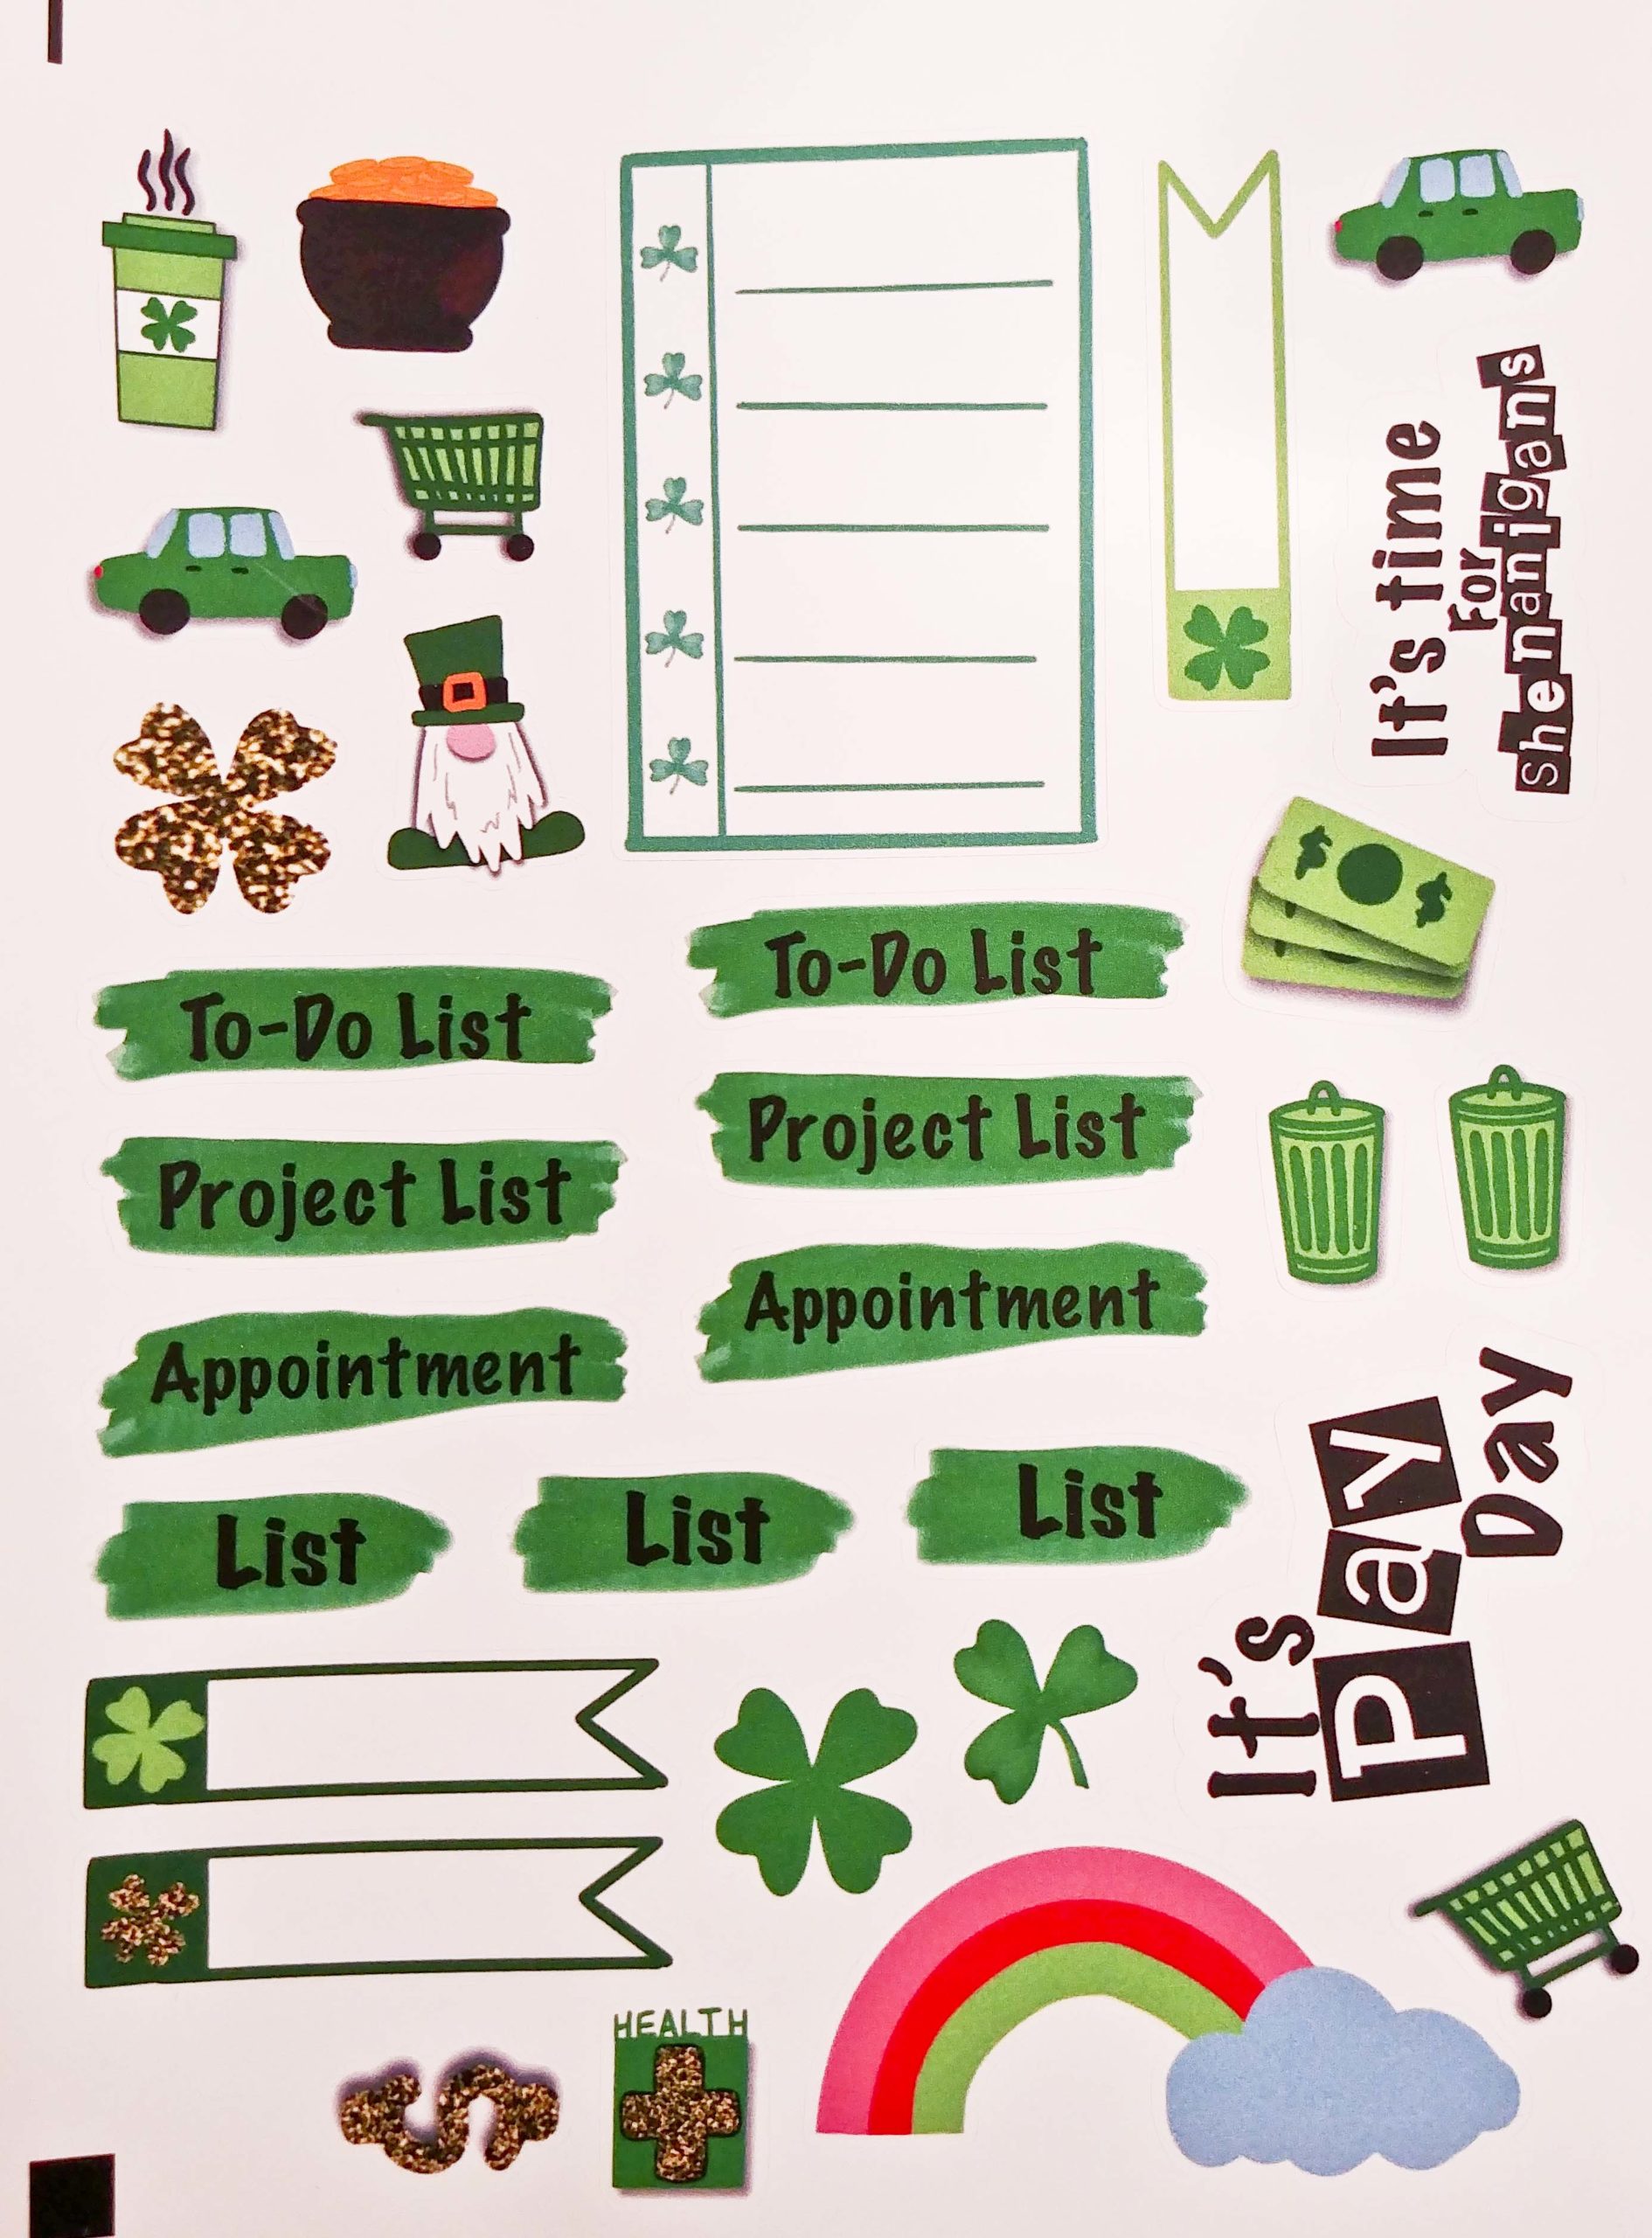 St. Patrick's Day sticker sheet